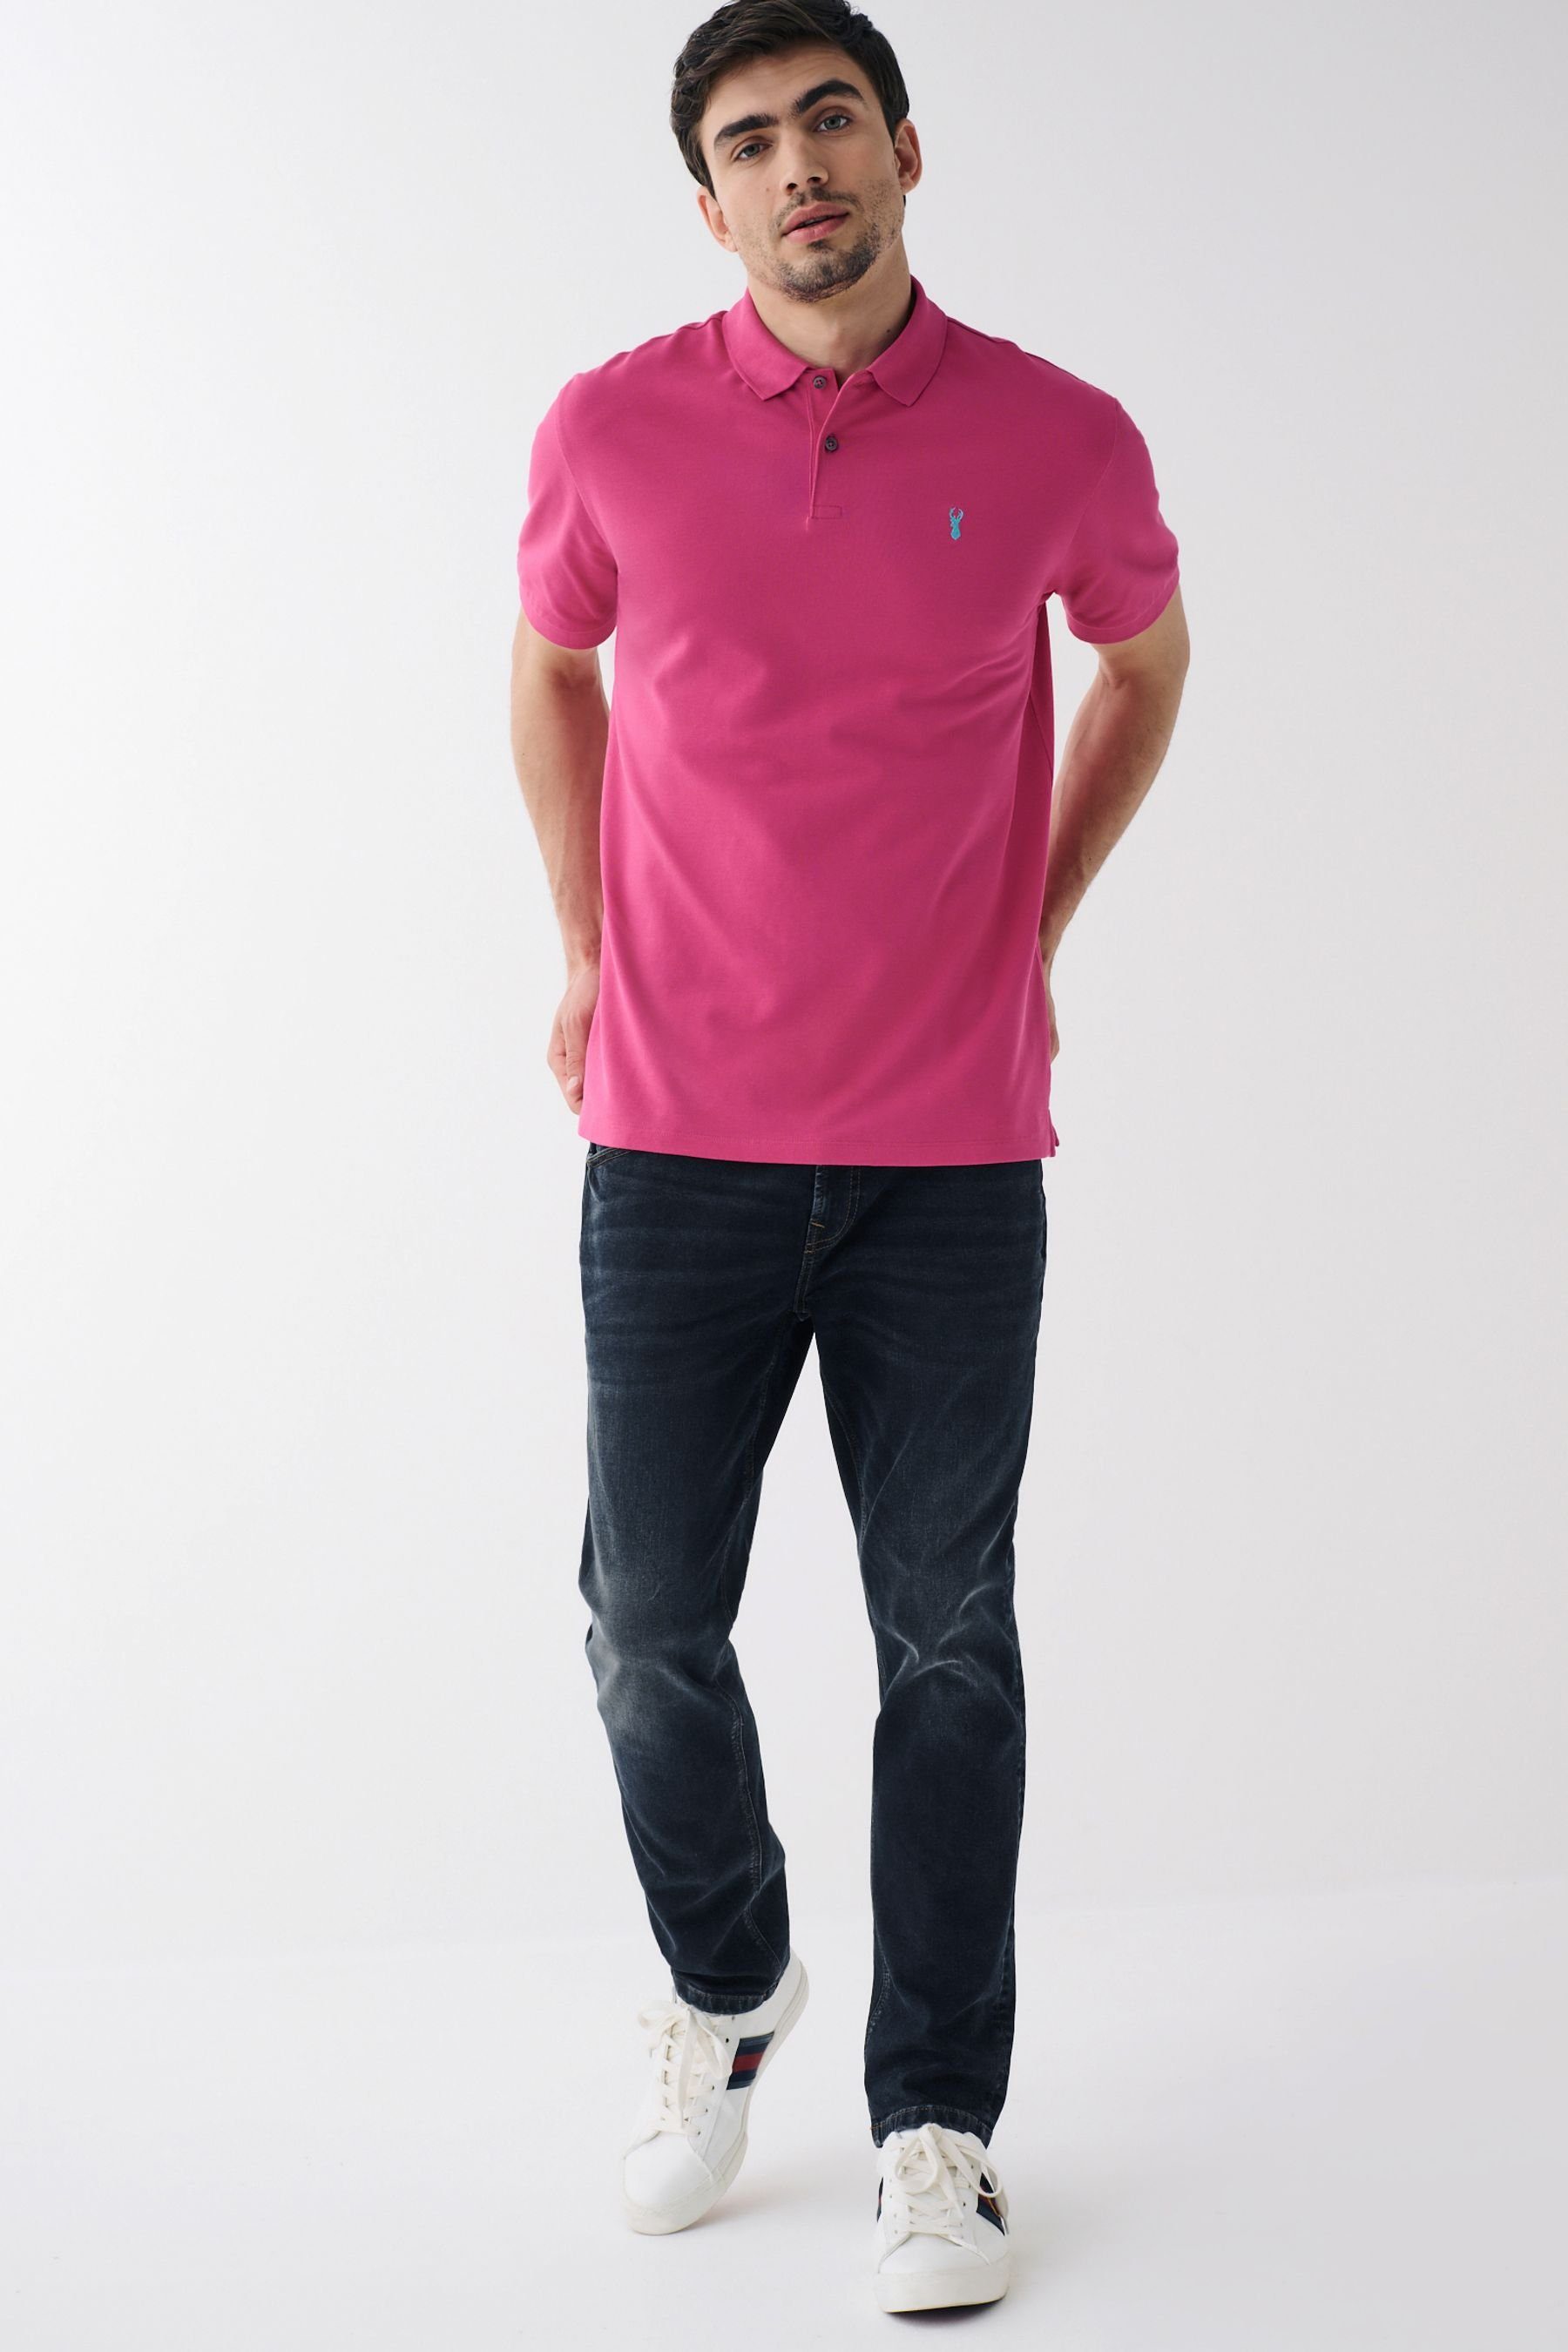 (1-tlg) Bright Poloshirt Pink Next Piqué-Poloshirt